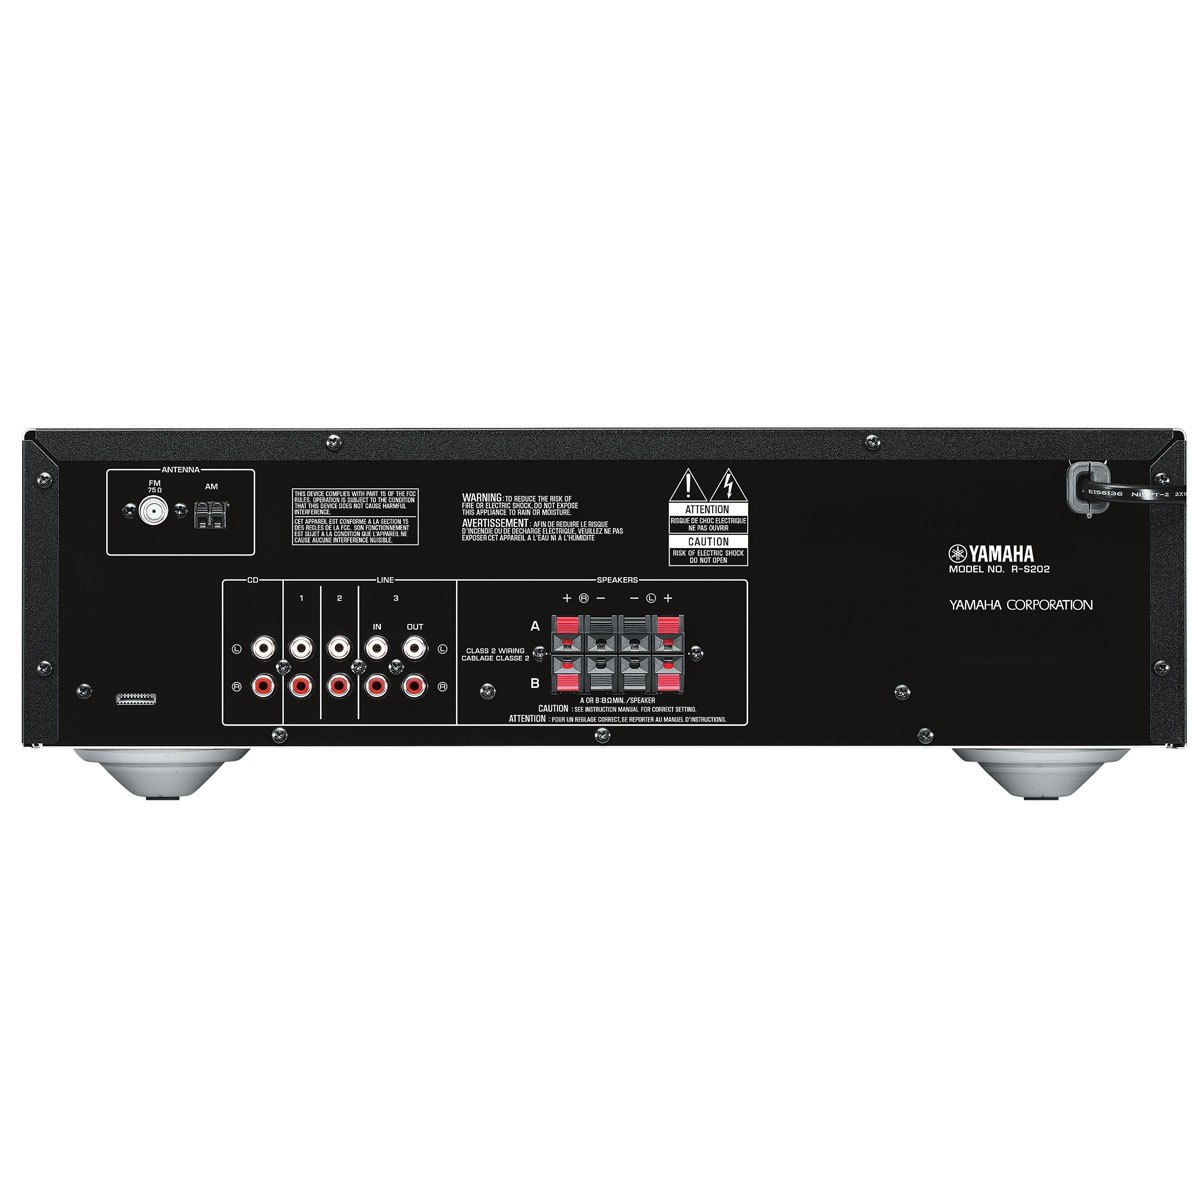 Comprar Amplificador YAMAHA R-S202D SILVER Online - Sonicolor